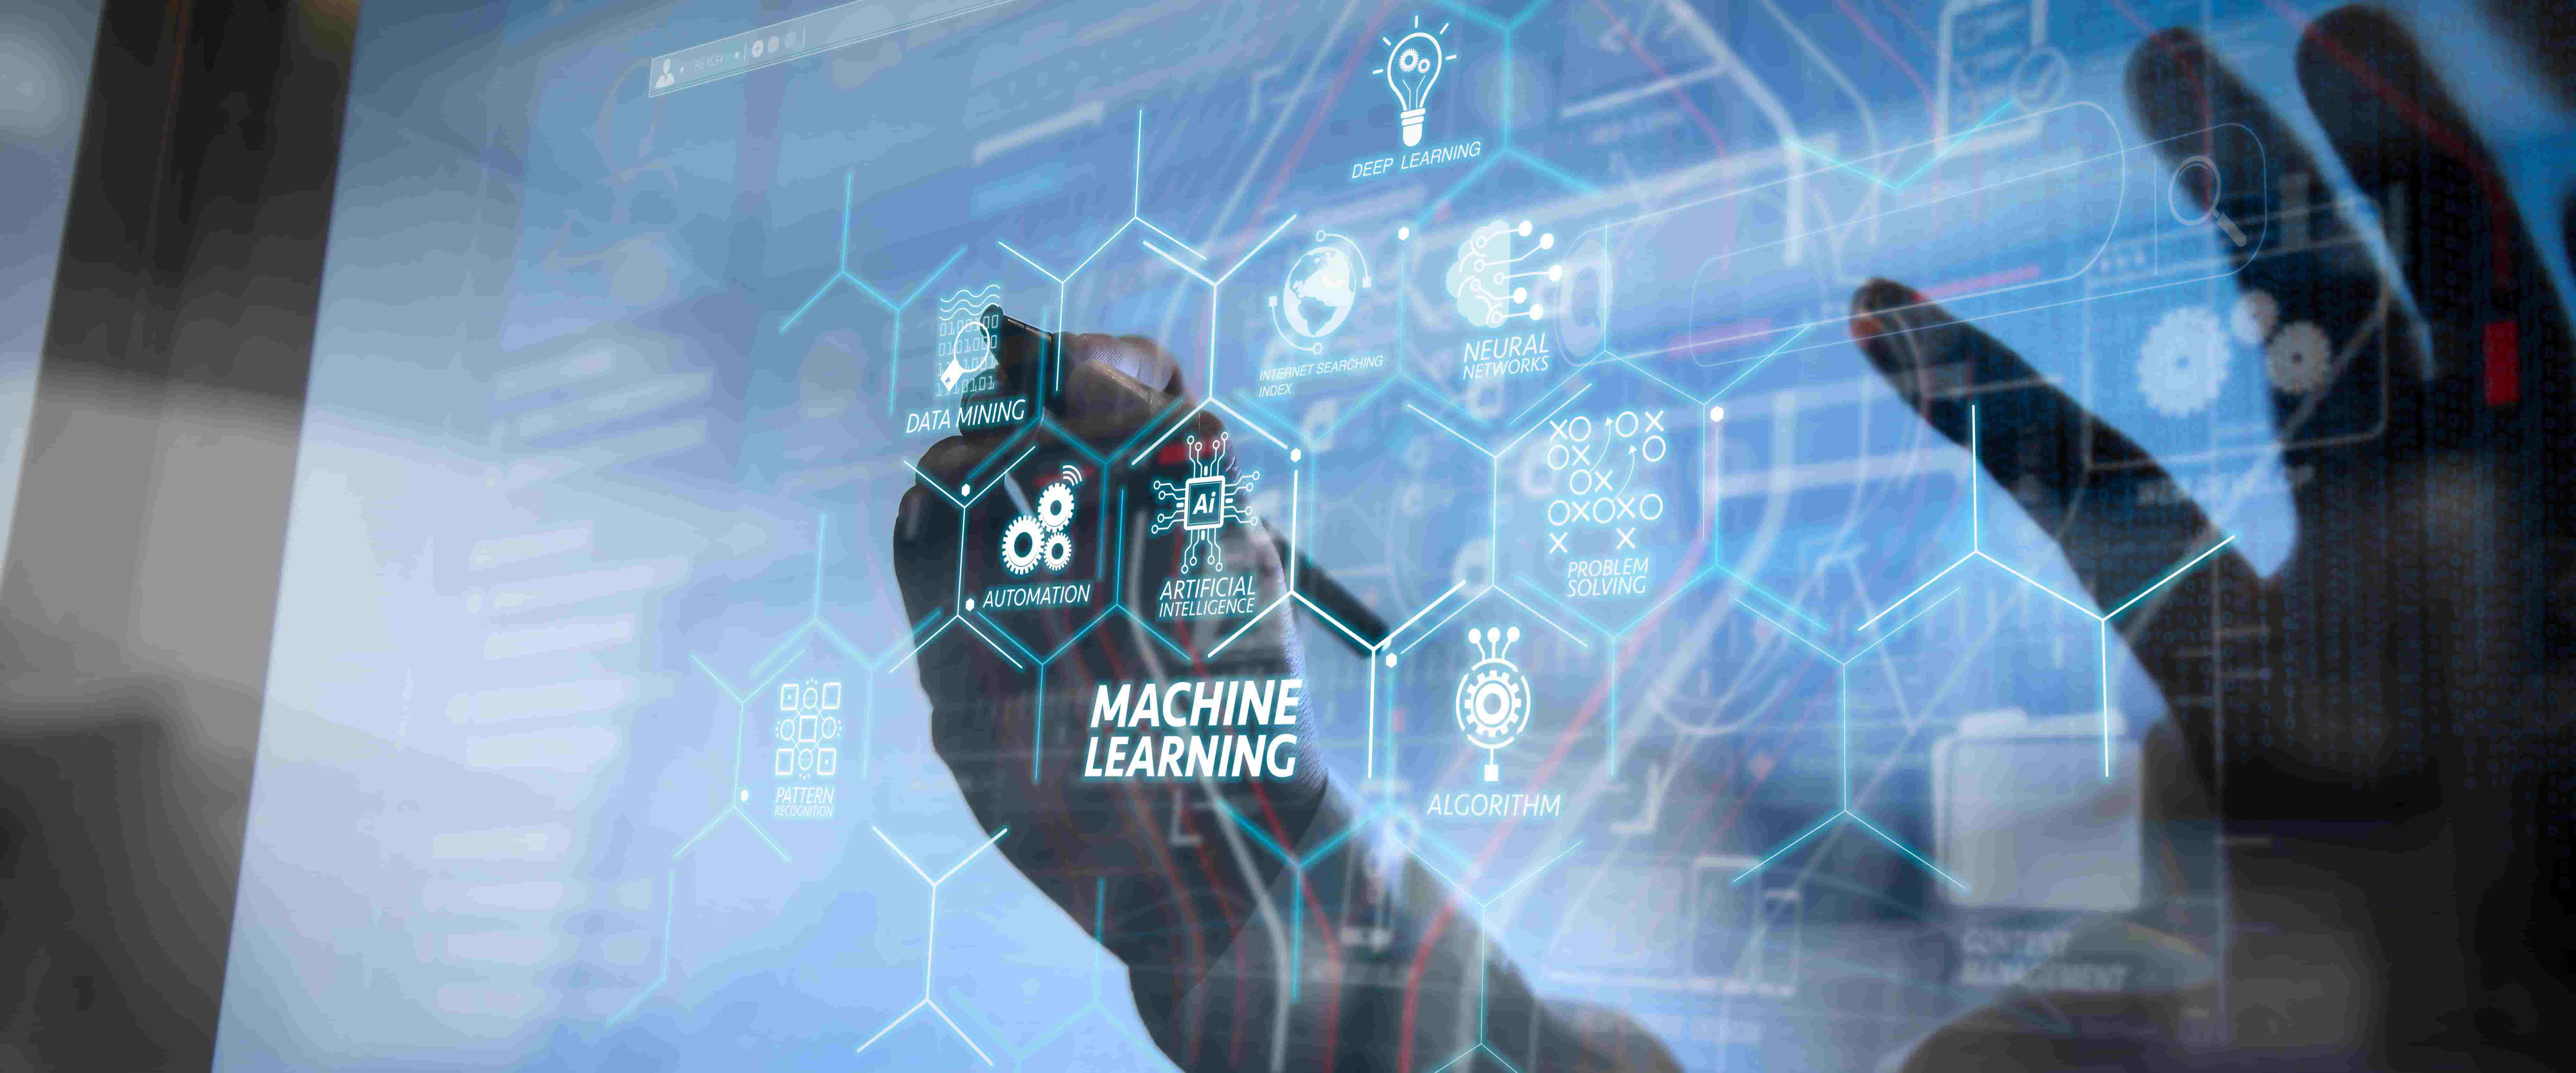 图片展示了一只手触碰虚拟界面，界面上有“Machine Learning”字样及与人工智能相关的图标和术语。